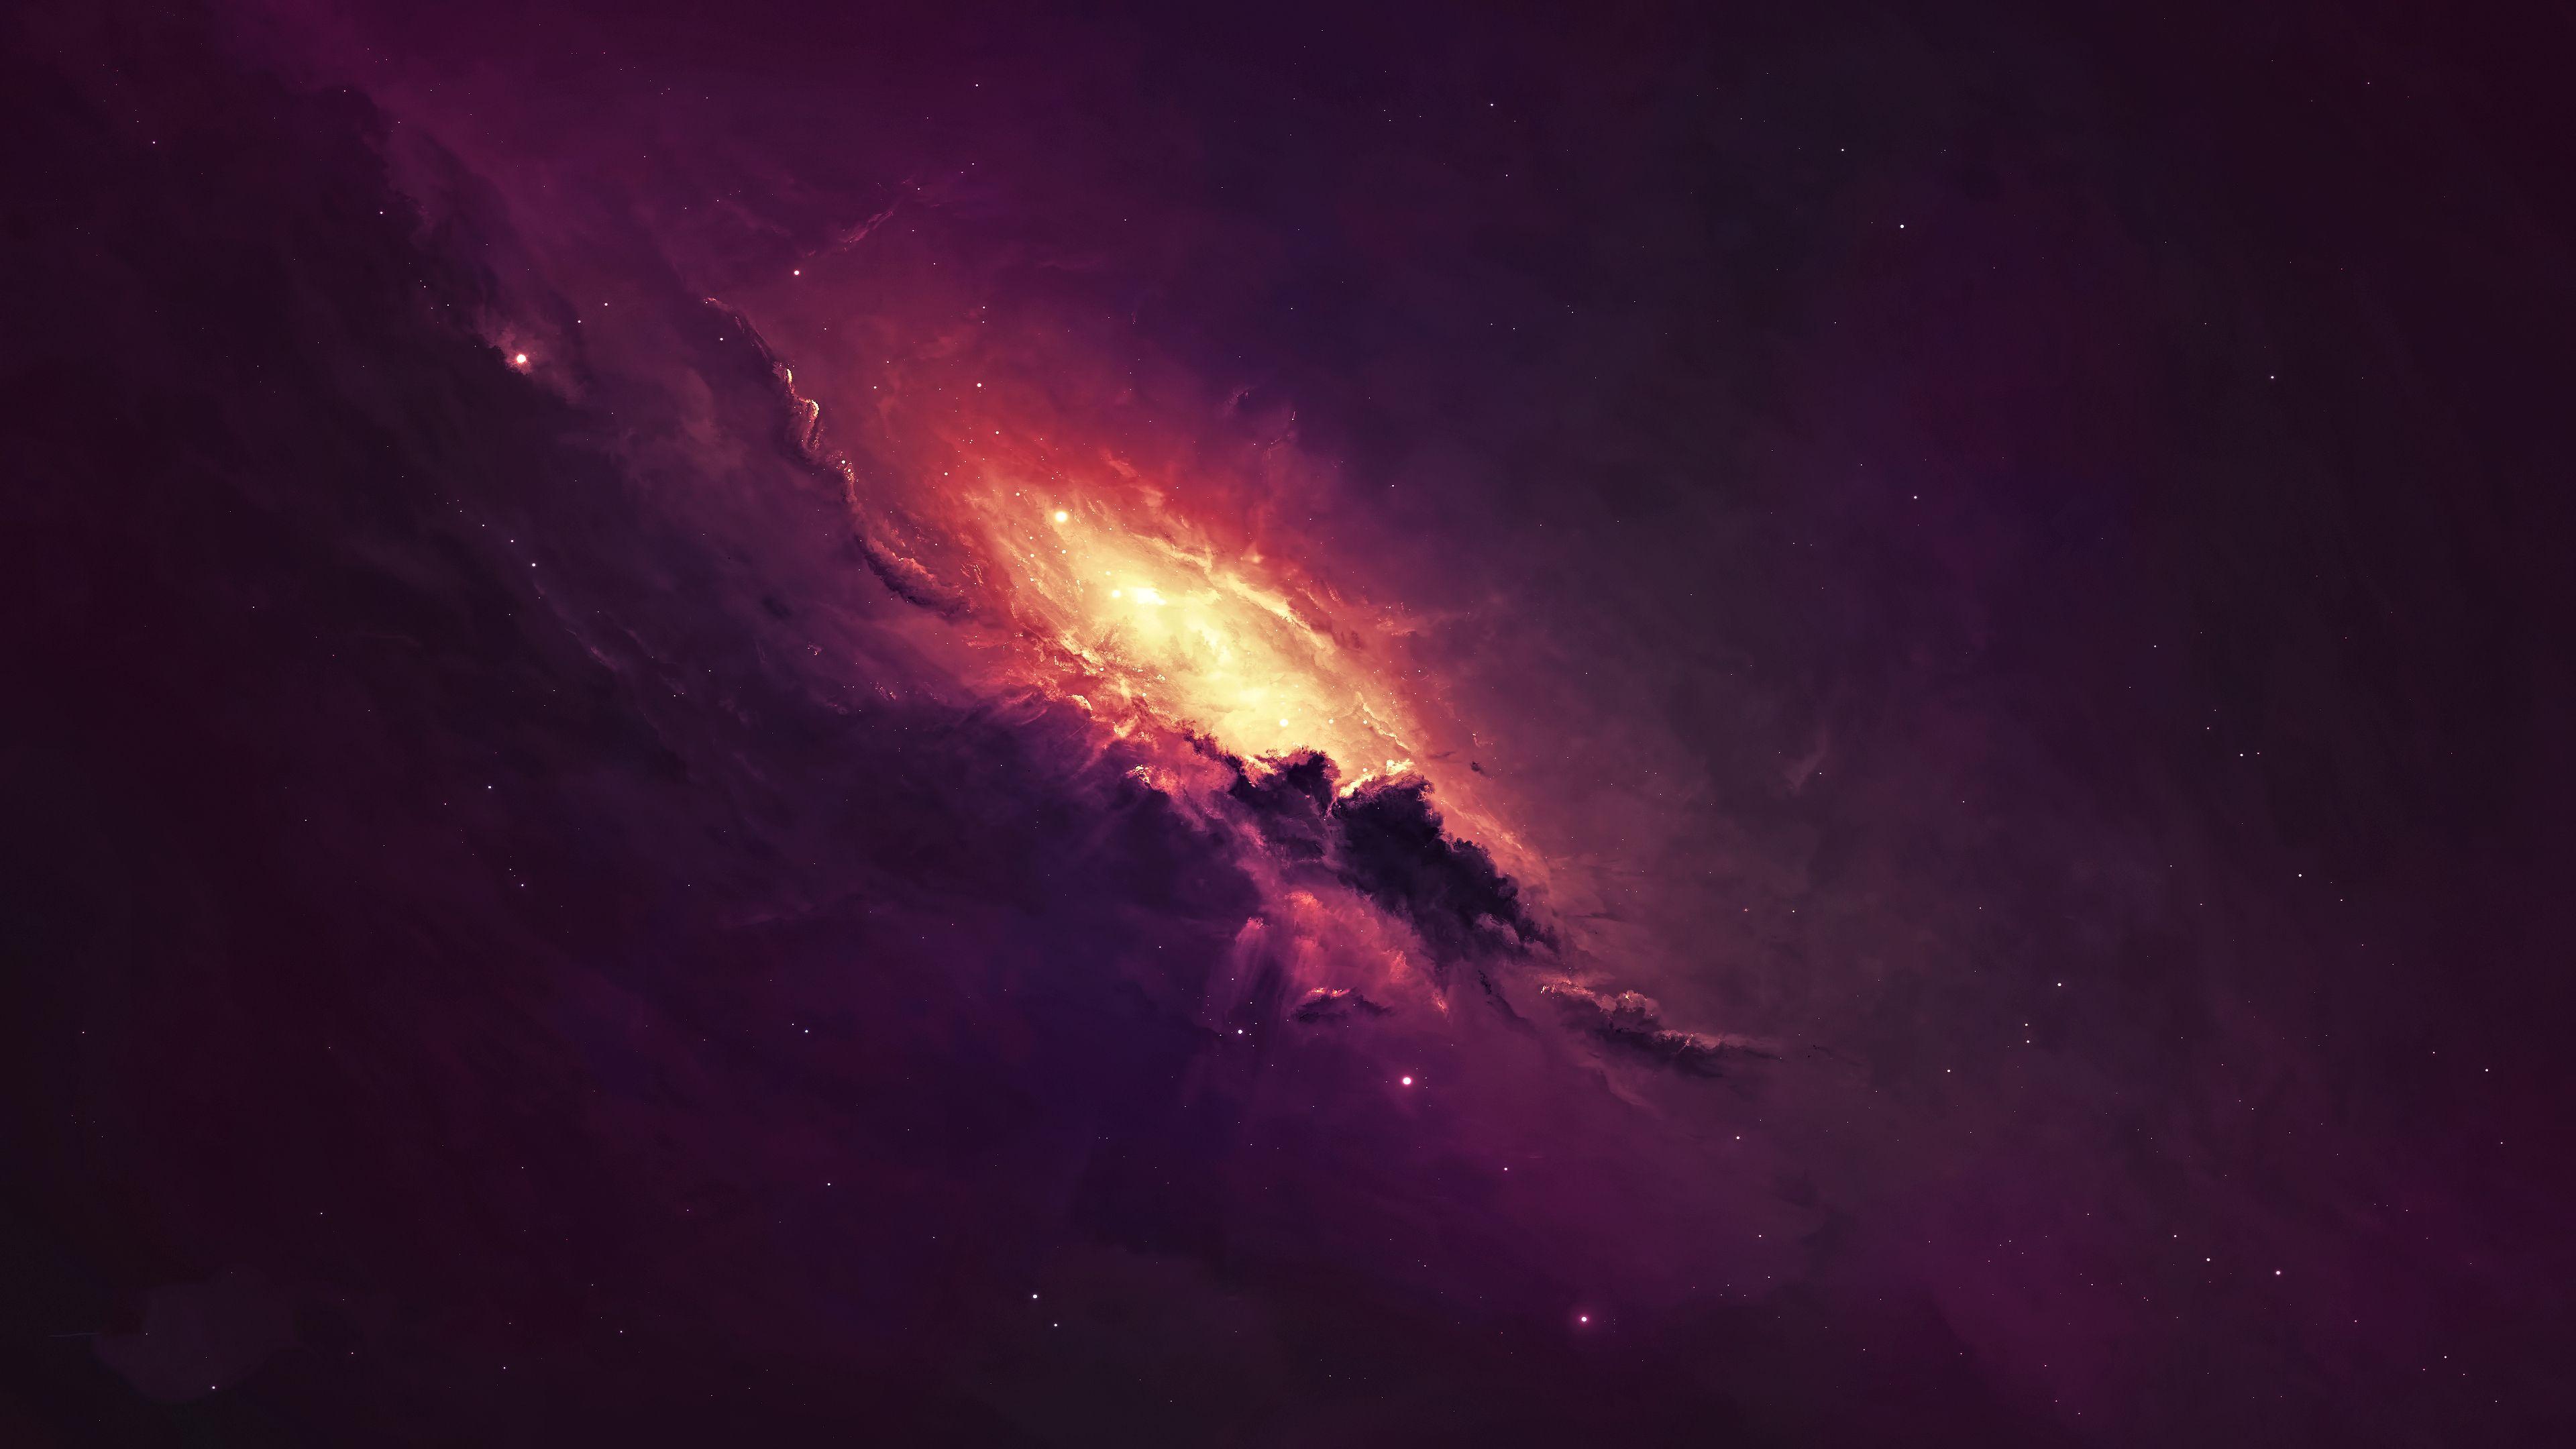 Koleksi Gambar Galaxy Universe Wallpaper 4K Terbaru - Newallpaper